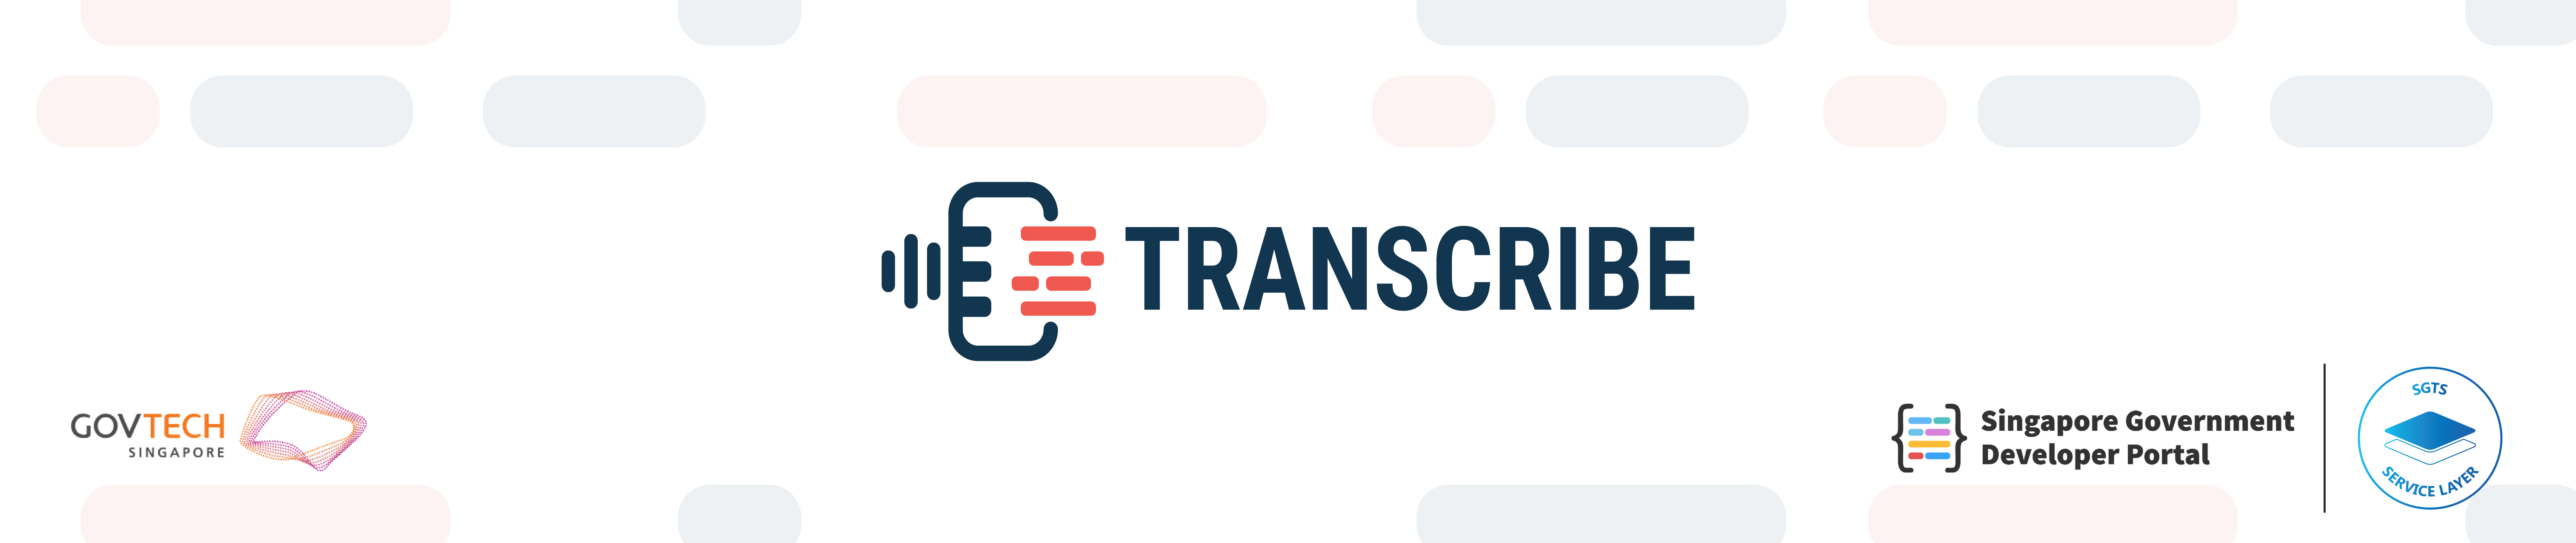 Transcribe header banner